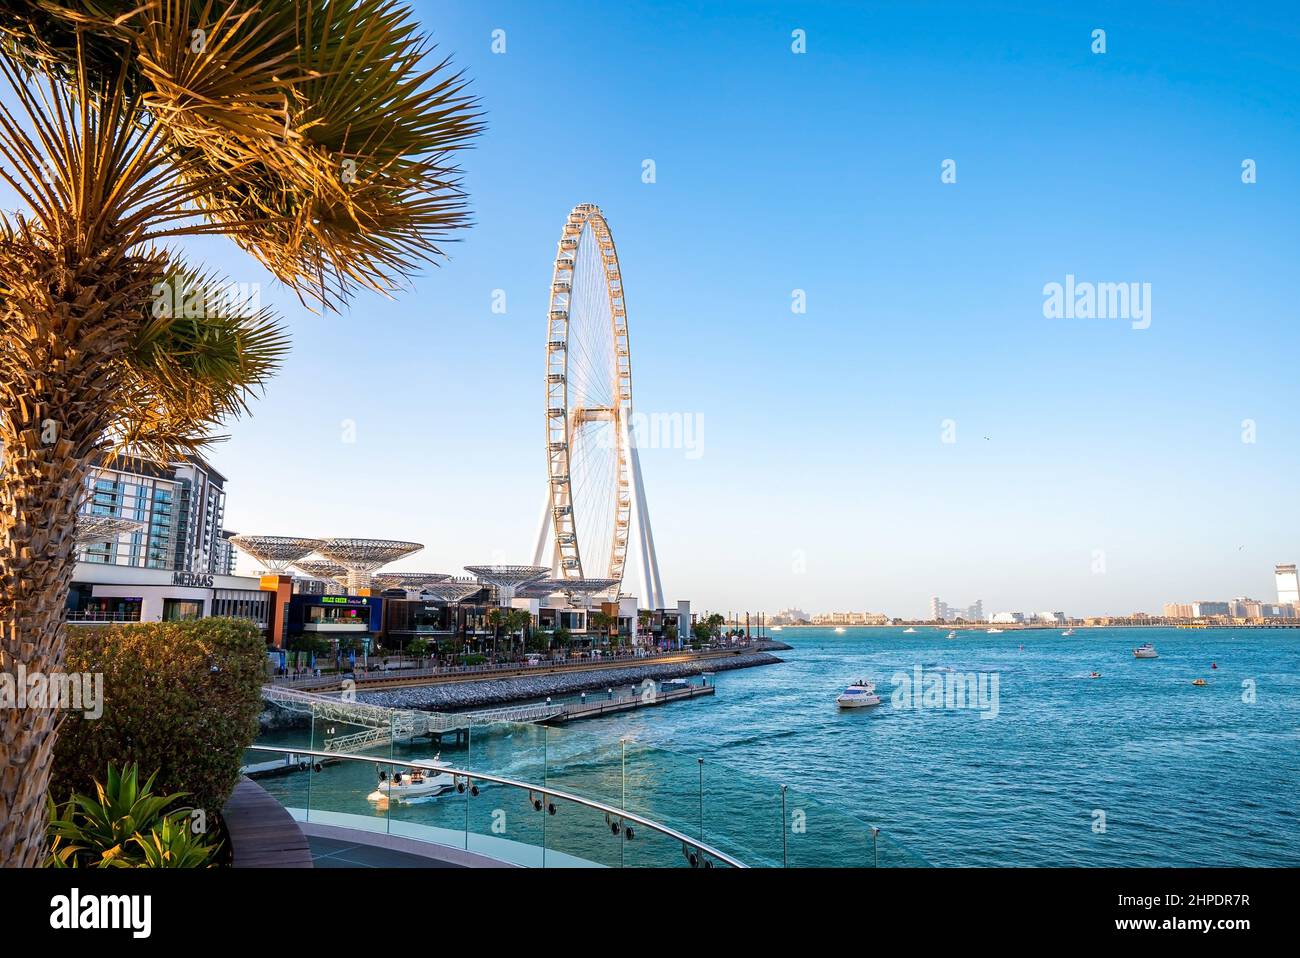 Ain Dubai, la plus grande roue de ferris au monde. Banque D'Images